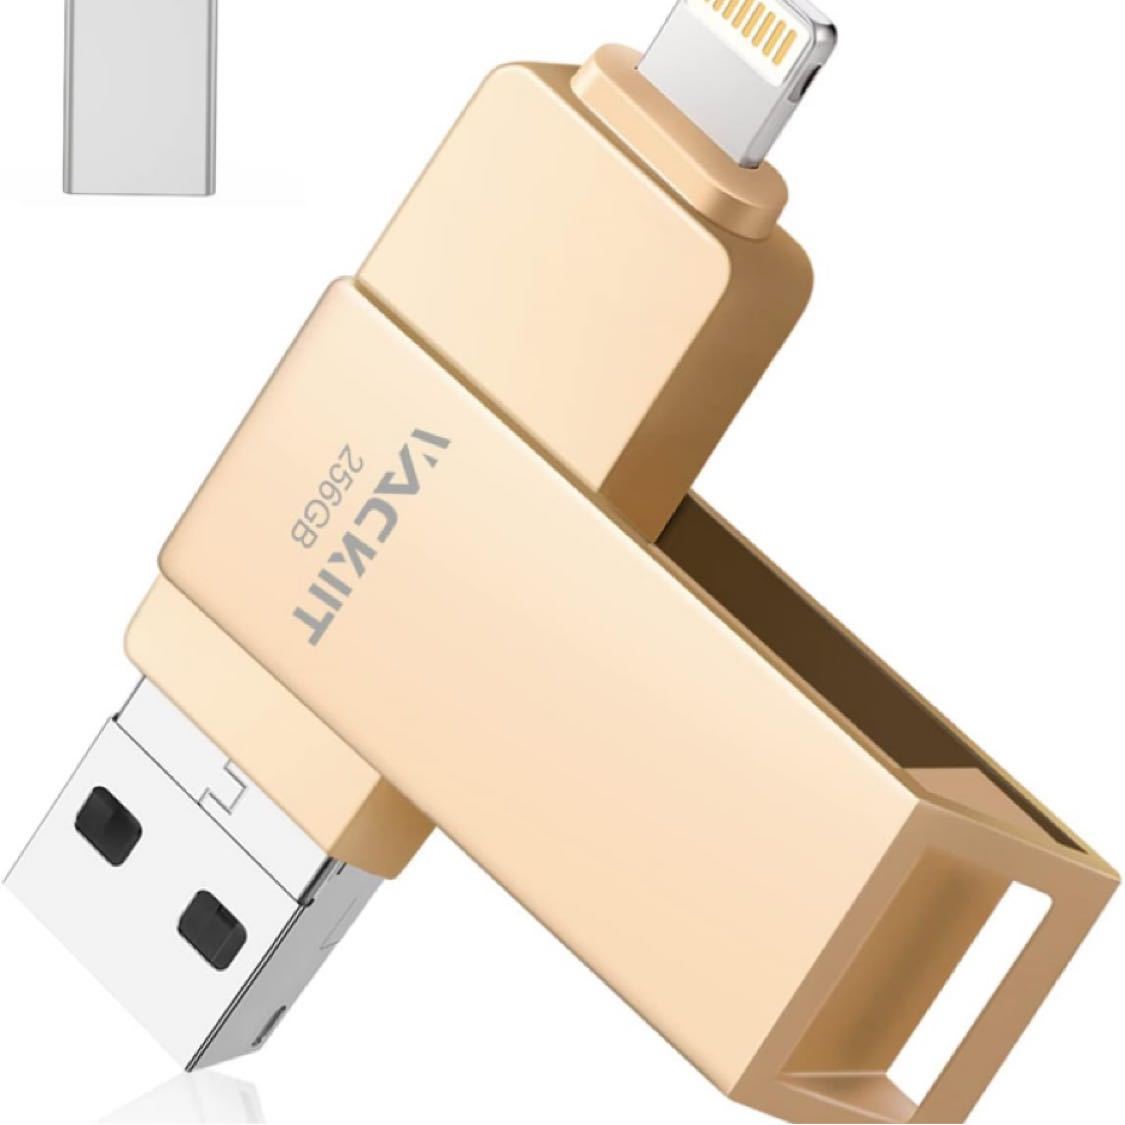 【MFi認証取得】iPhone用USBメモリー 256GB USBフラッシュドライブ 高速USB 3.0 フラッシュメモリー （ゴールド）の画像1